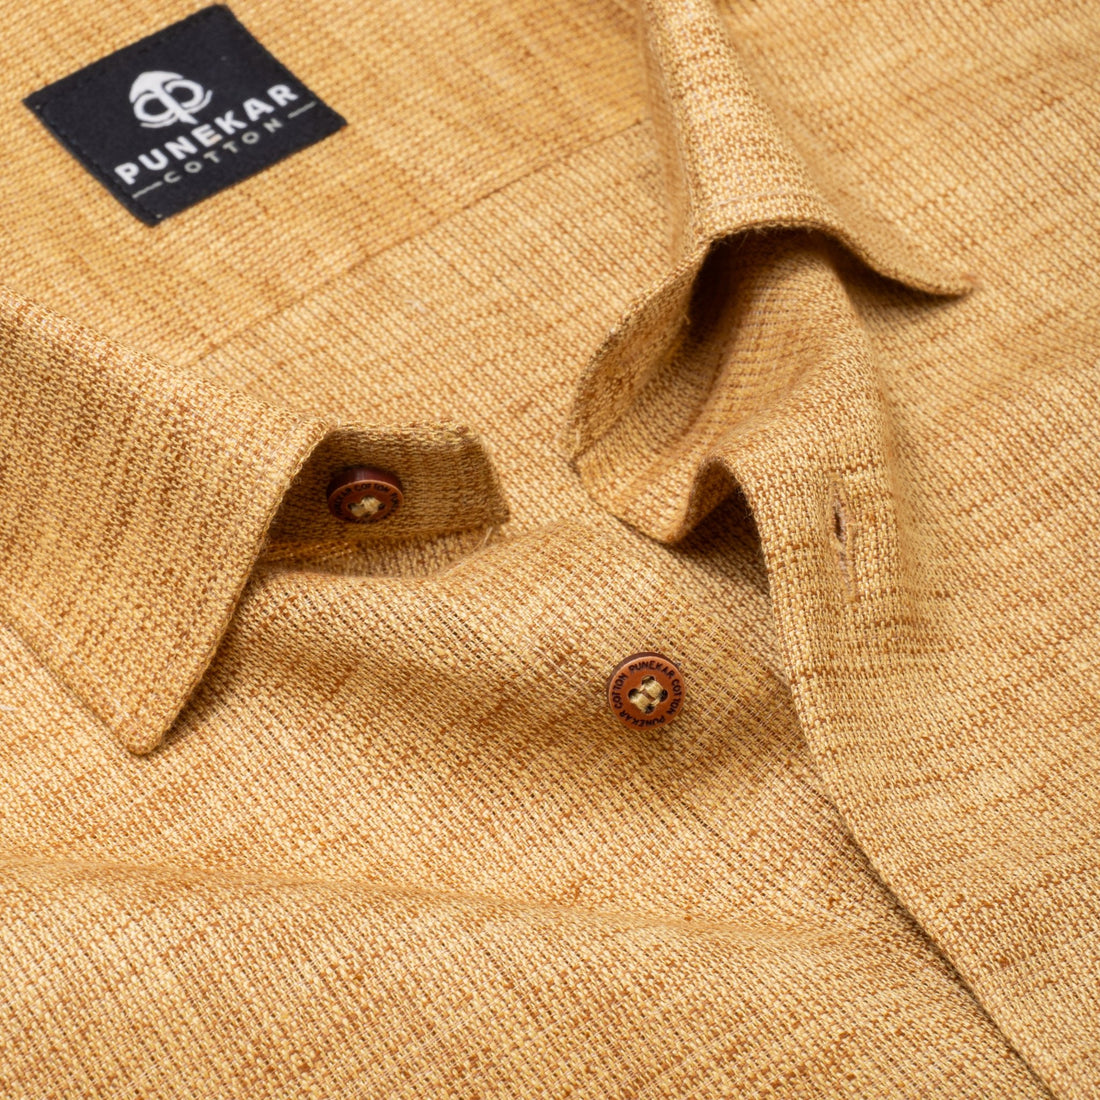 Light Brown Color Combed Cotton Shirts For Men - Punekar Cotton